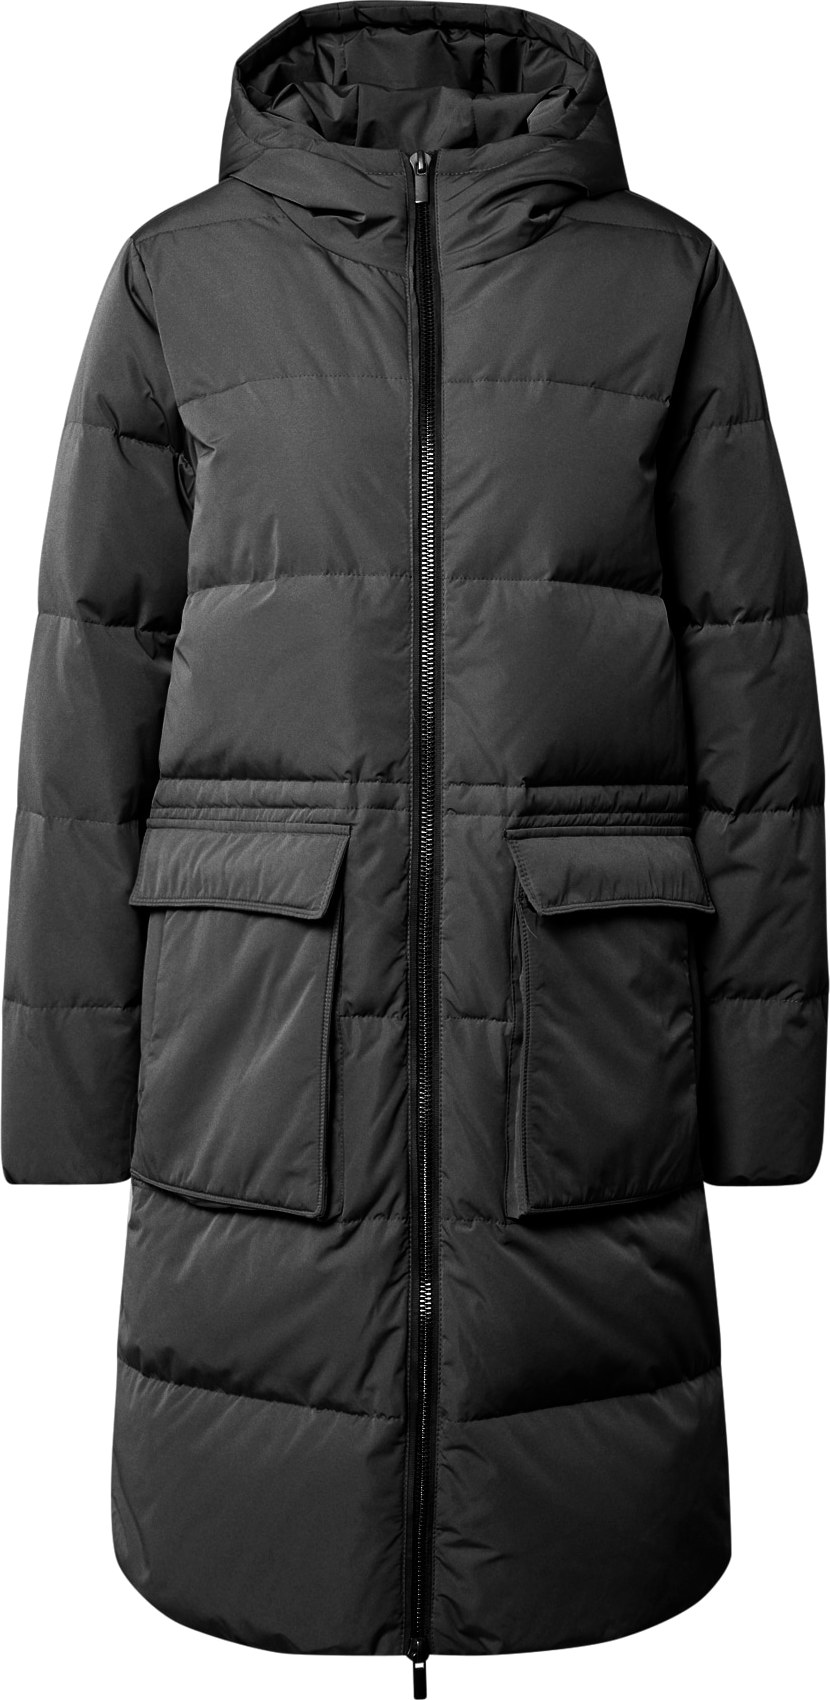 MOSS COPENHAGEN Zimní kabát černá